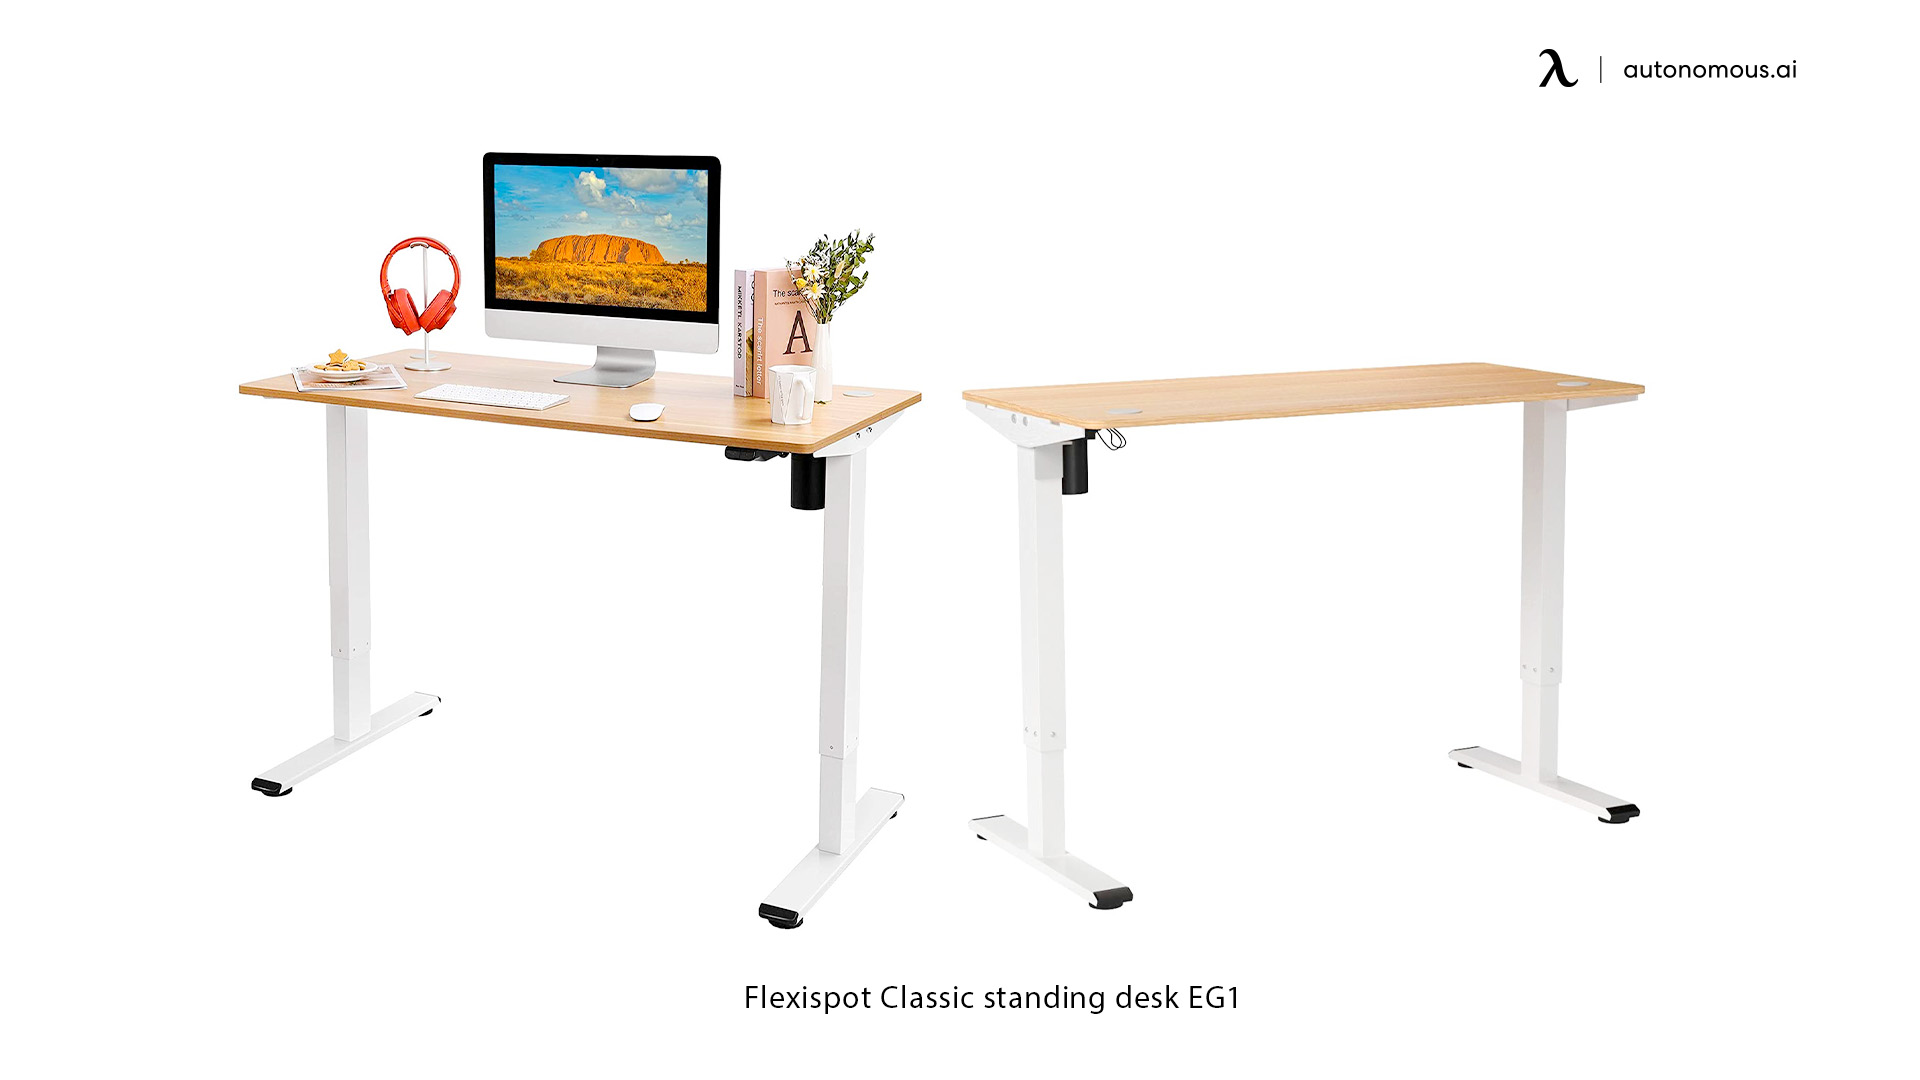 Flexispot Black Friday Adjustable Desks